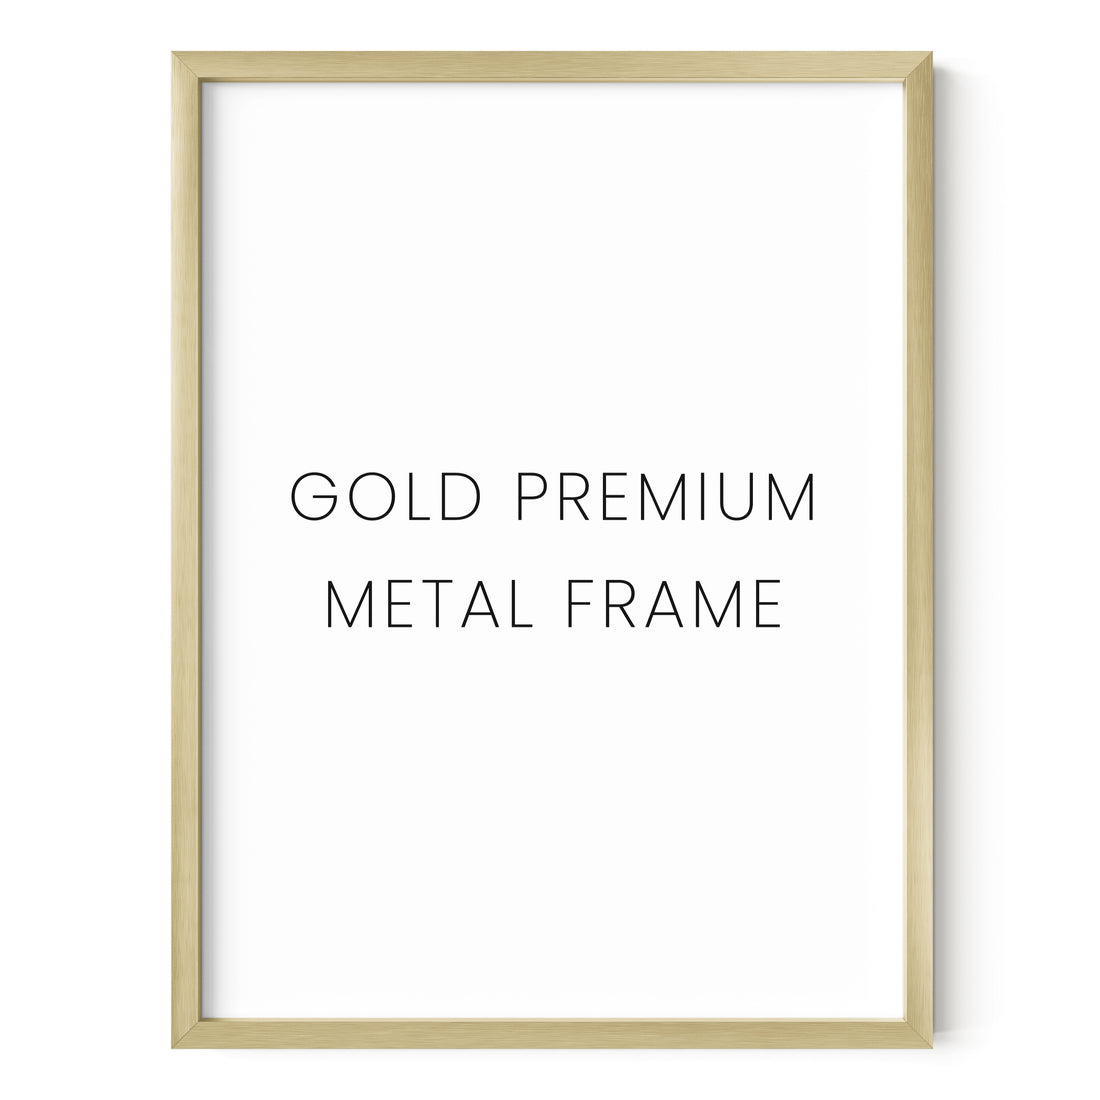 Gold Metal Frame - 8x10"